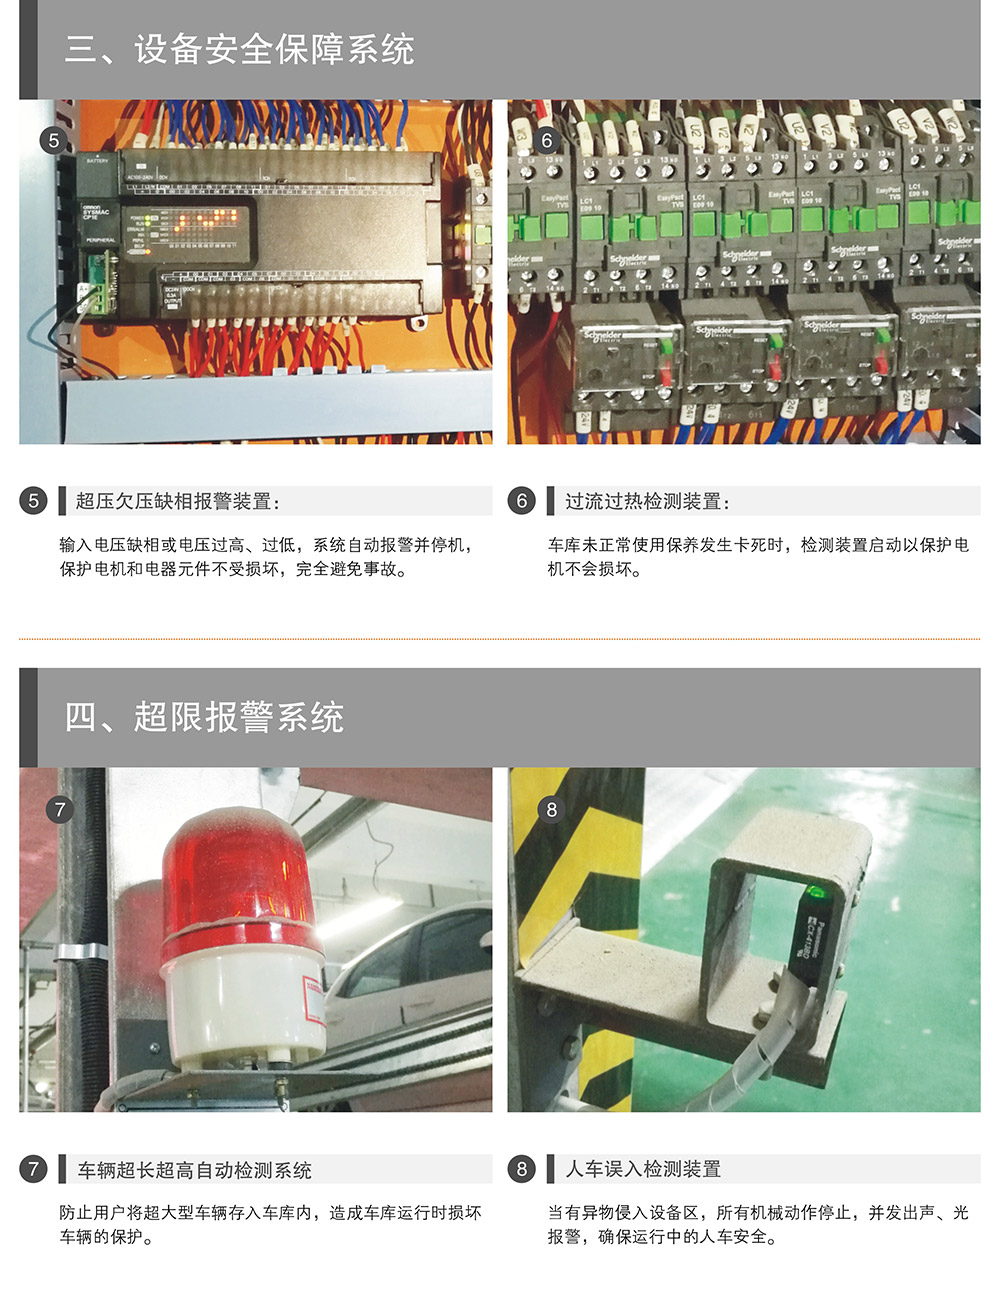 重庆四至六层PSH4-6升降横移式立体停车设备安全保障系统.jpg